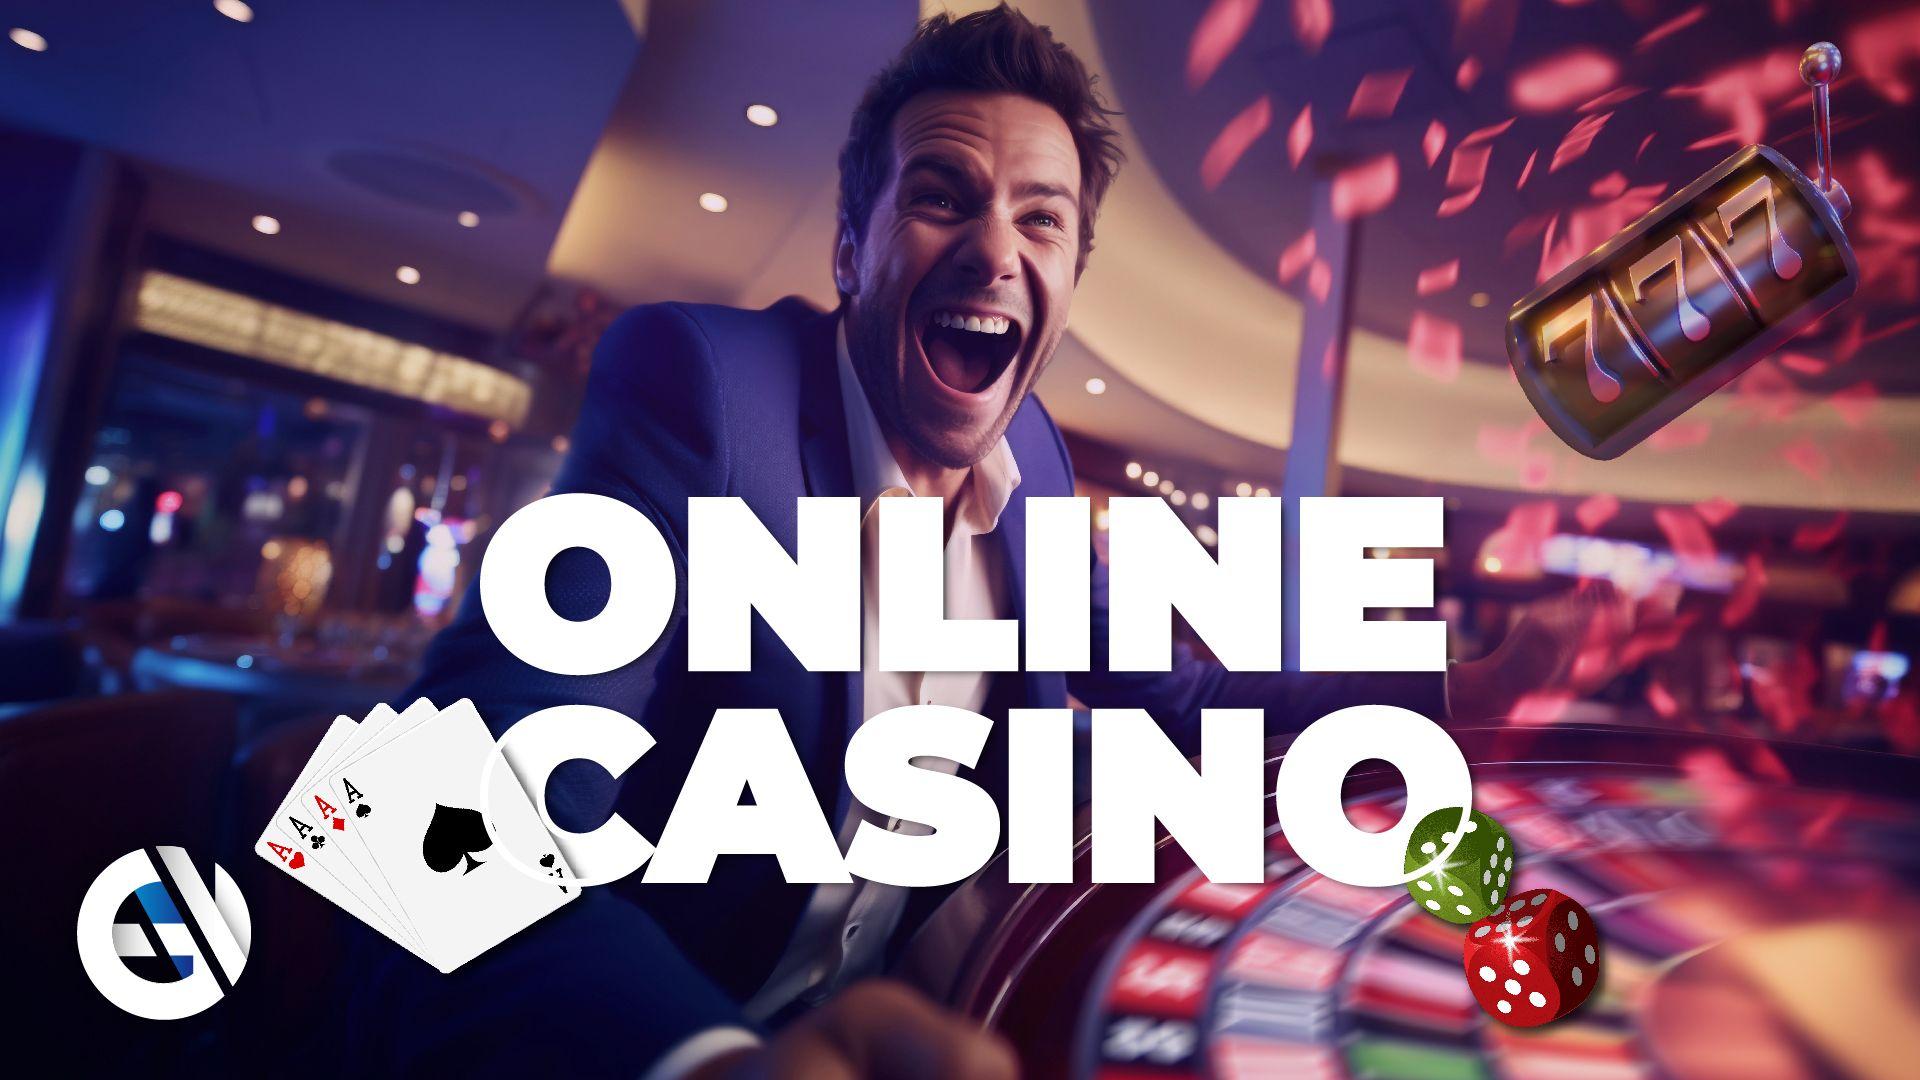 Wie man die neuesten Online-Casinos findet und auswählt - Die wichtigsten Dinge, die man überprüfen sollte, bevor man spielt